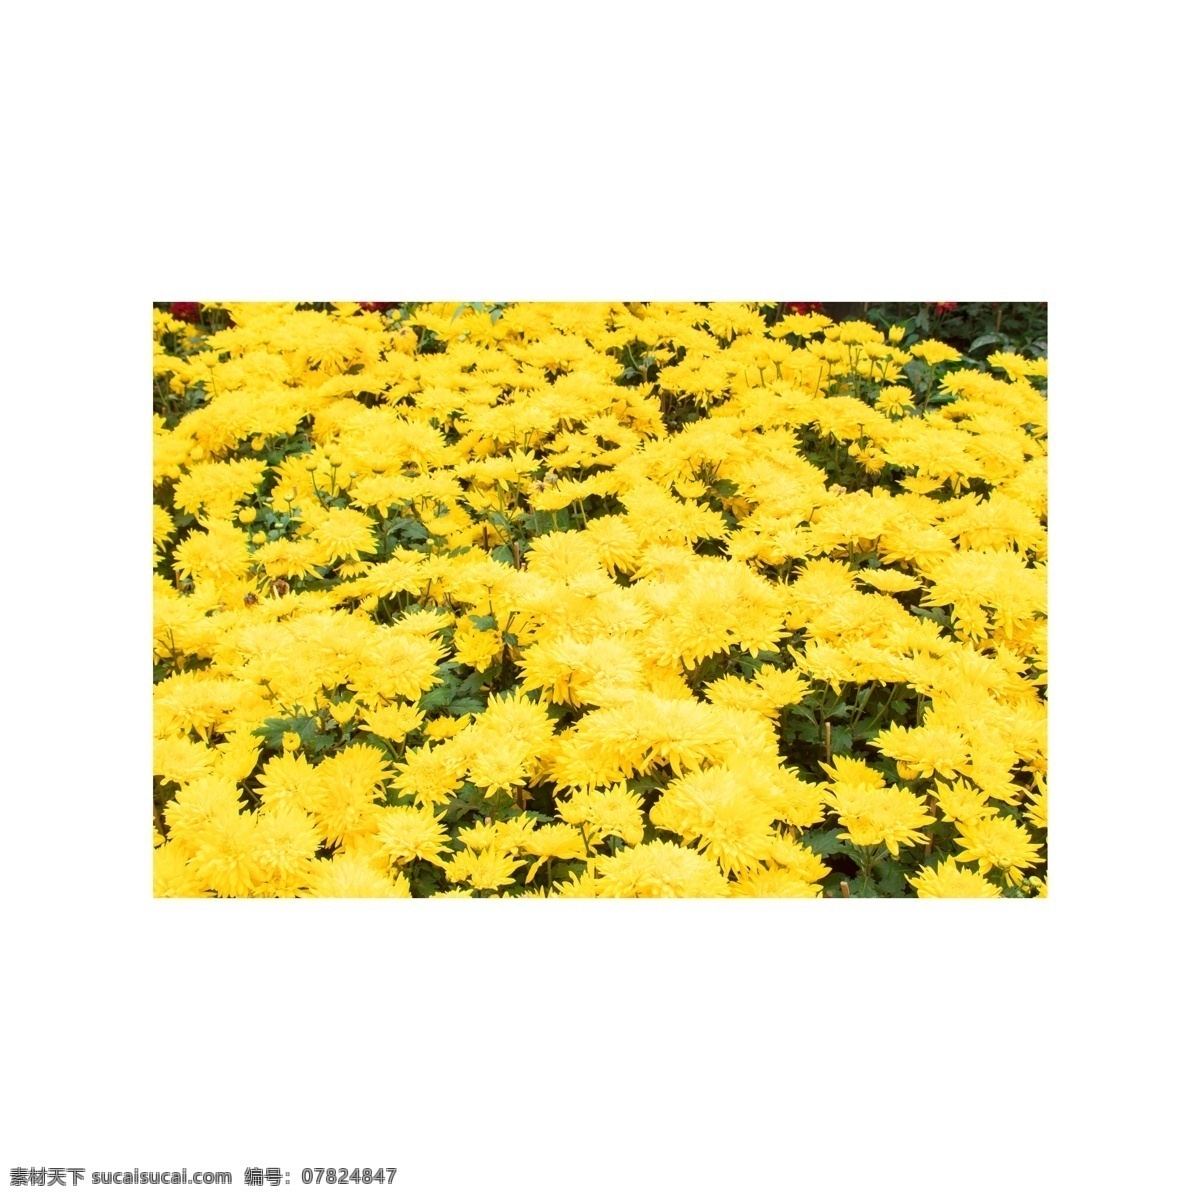 黄色 菊花 实物 拍摄 图 黄色菊花 花丛 花圃 鲜花 观赏 赏花 美丽 实物拍摄 花卉 花朵 绿叶 植物